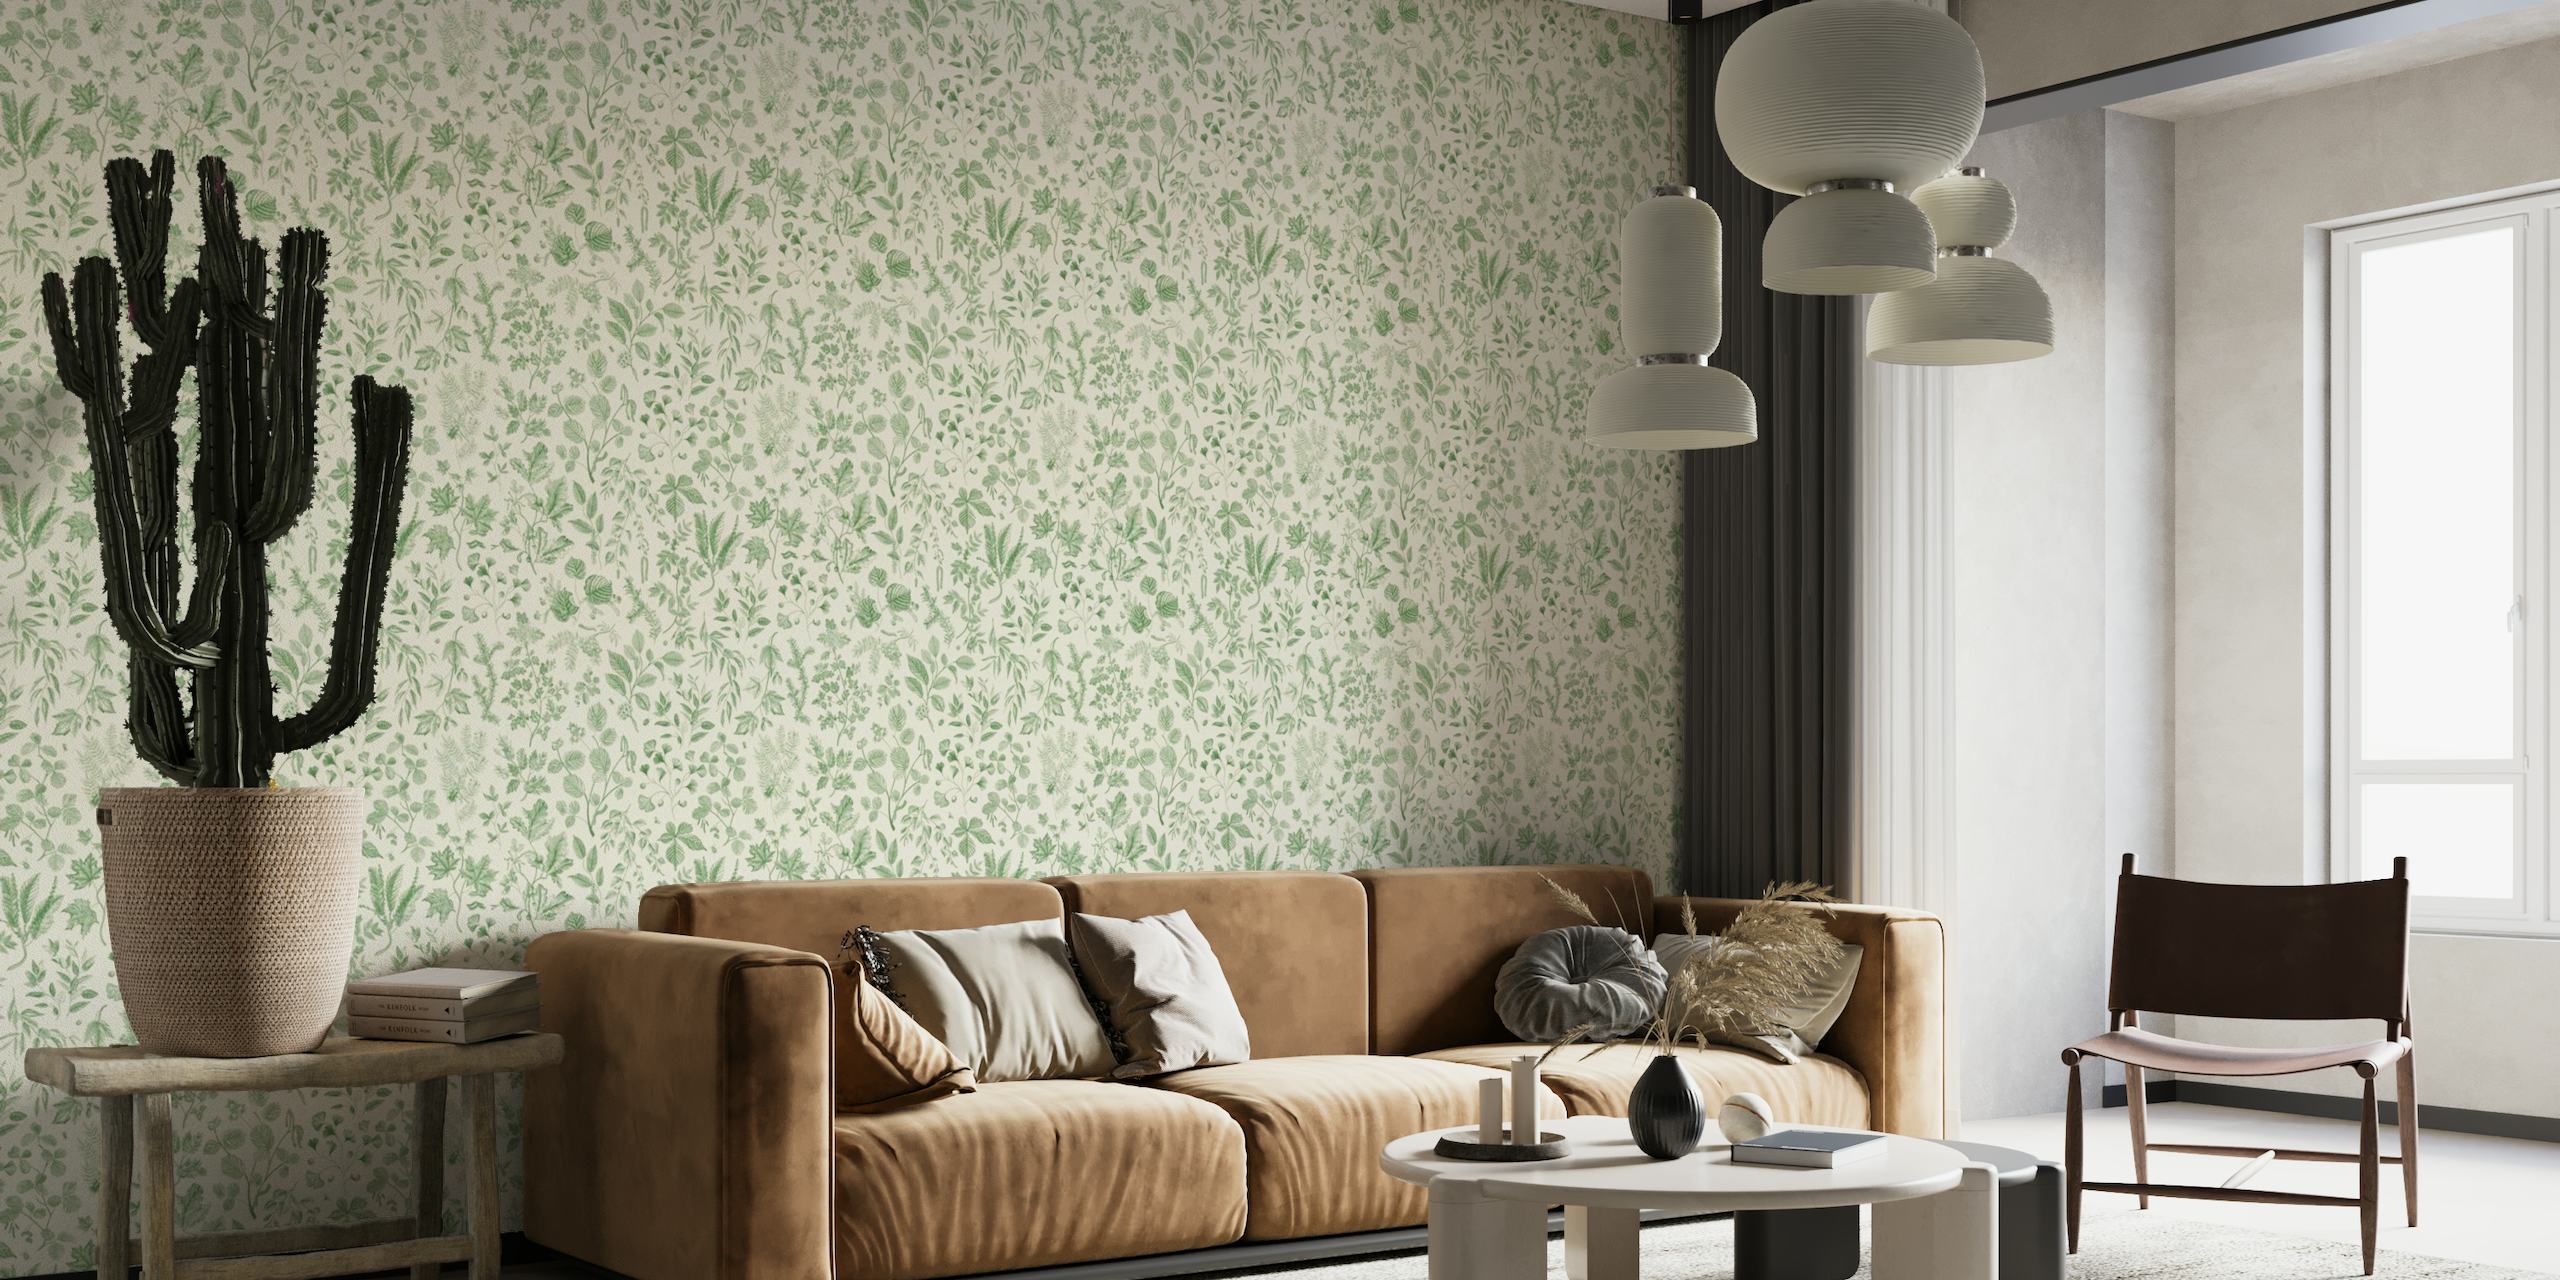 Leafy green wallpaper